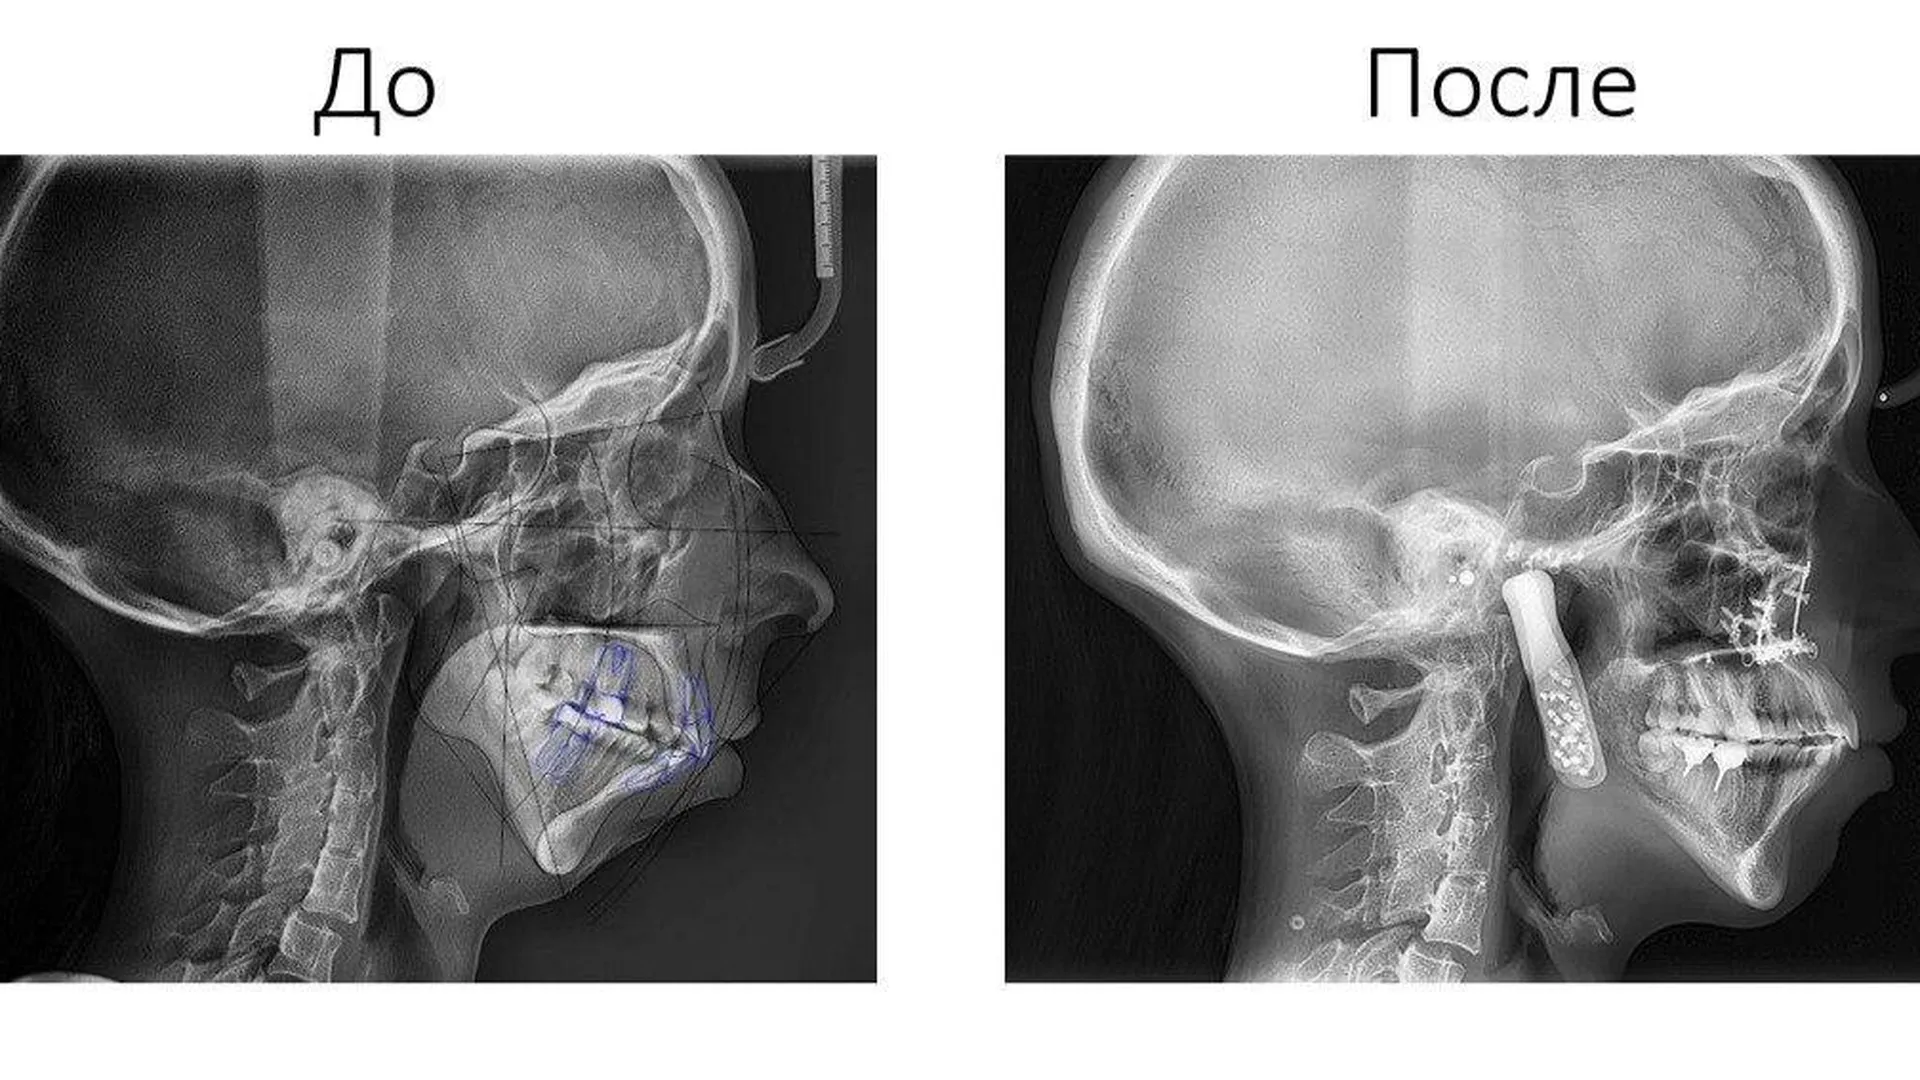 Хирурги МОНИКИ 12 часов восстанавливали челюсть пациентке по 3D-модели